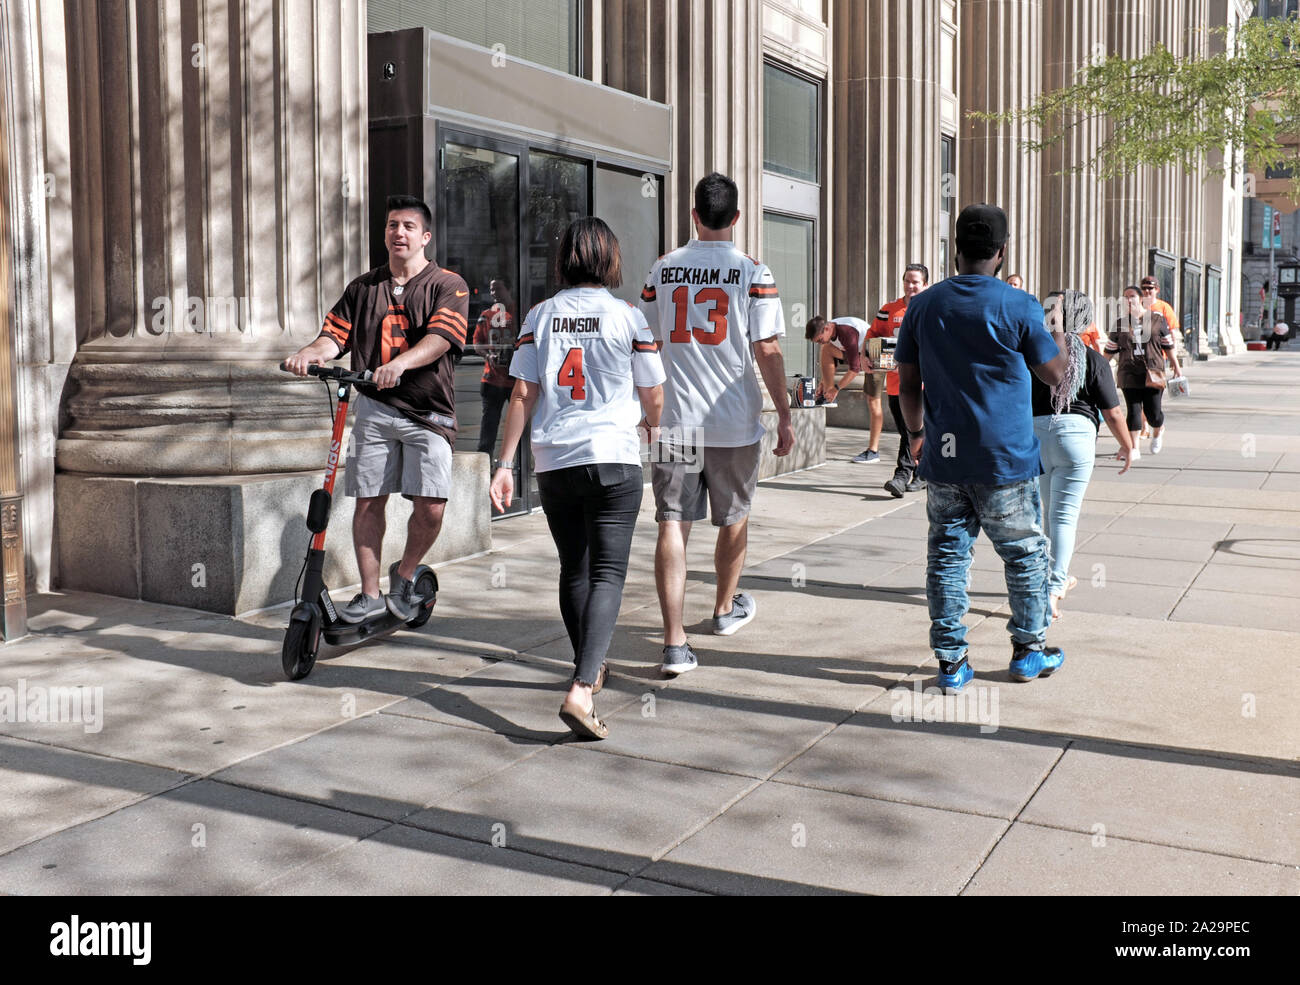 A Cleveland Browns tifoso rides uno scooter su un marciapiede in downtown Cleveland, Ohio, USA mentre altri tifosi a piedi da prima del gioco. Foto Stock